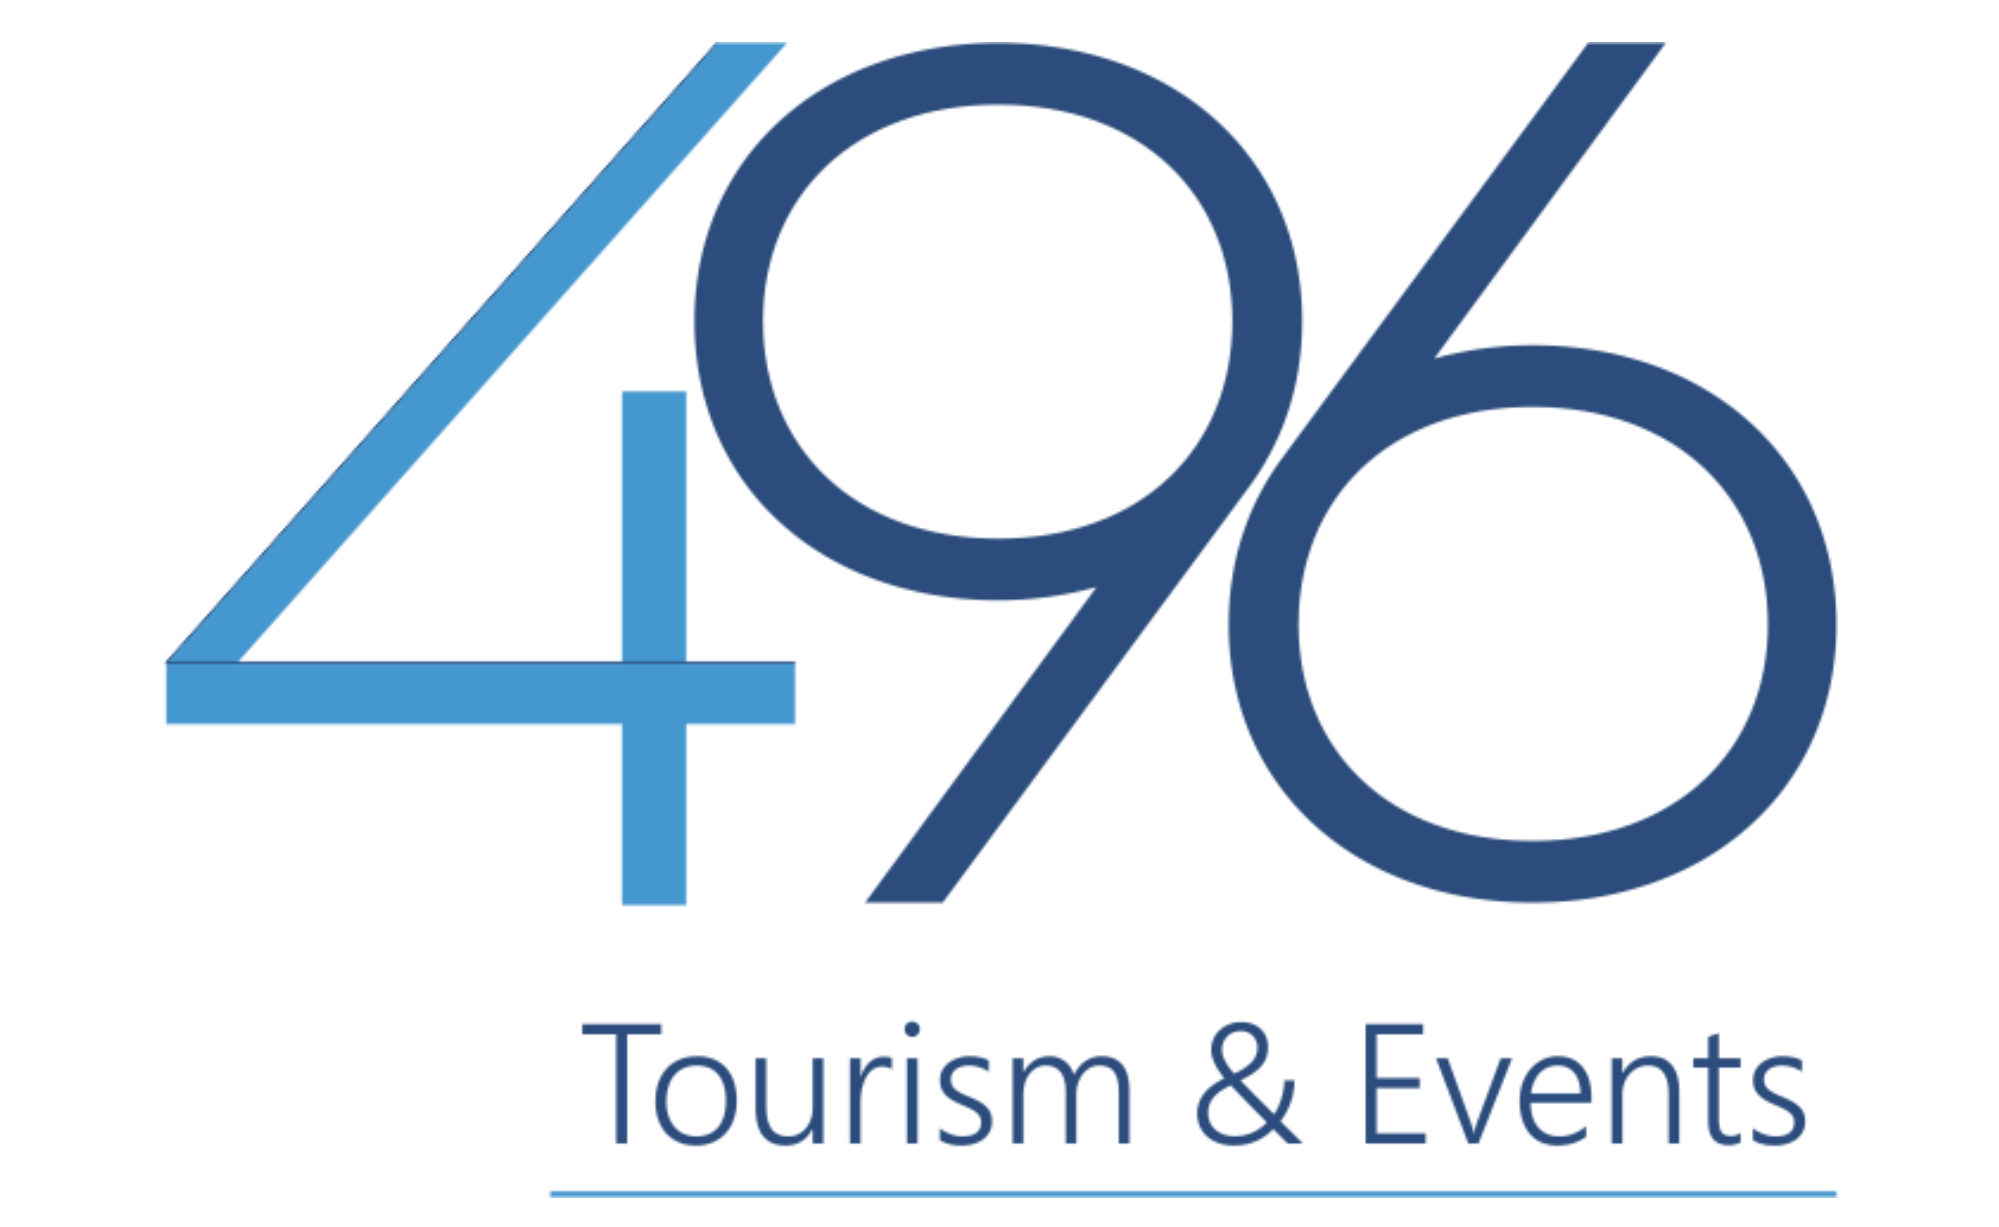 496 Tourism & Events